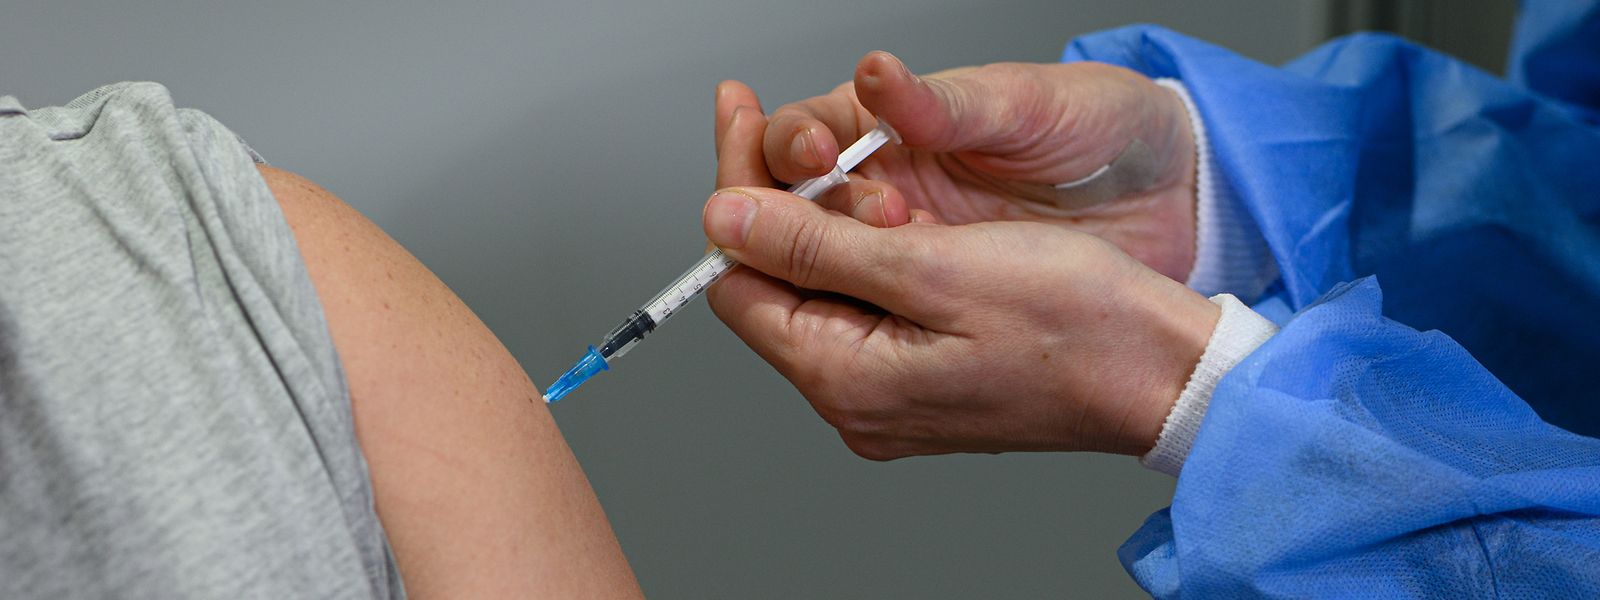 Der Deutsche Bundestag entscheidet am Donnerstag über eine mögliche Impfpflicht - in Luxemburg laufen die Vorbereitungen weiter.